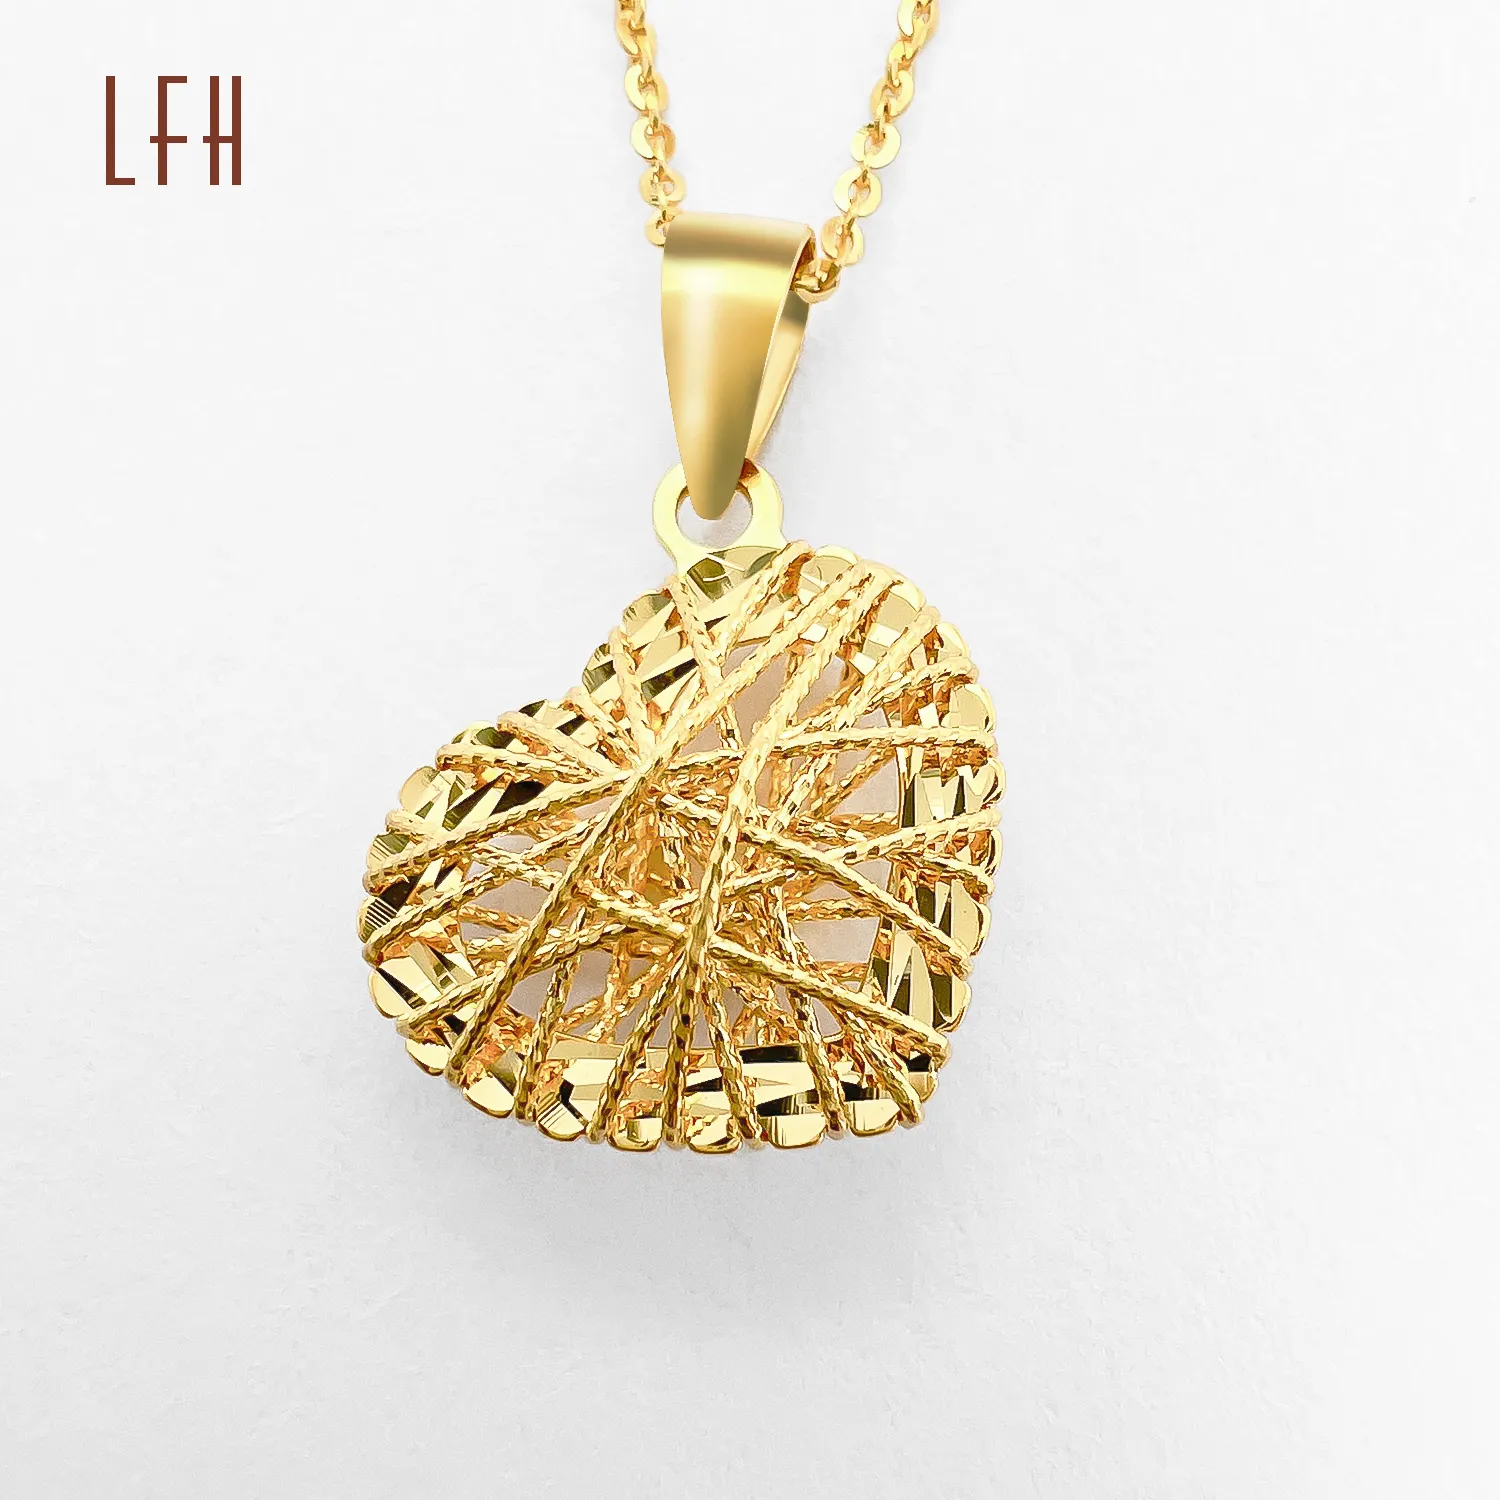 LFH 18 قيراط قلادة قلب أصلي أصفر حقيقي 1 8 قيراط قلادة ترقوة حقيقية من الذهب الخالص قلادة بدلاية من الذهب